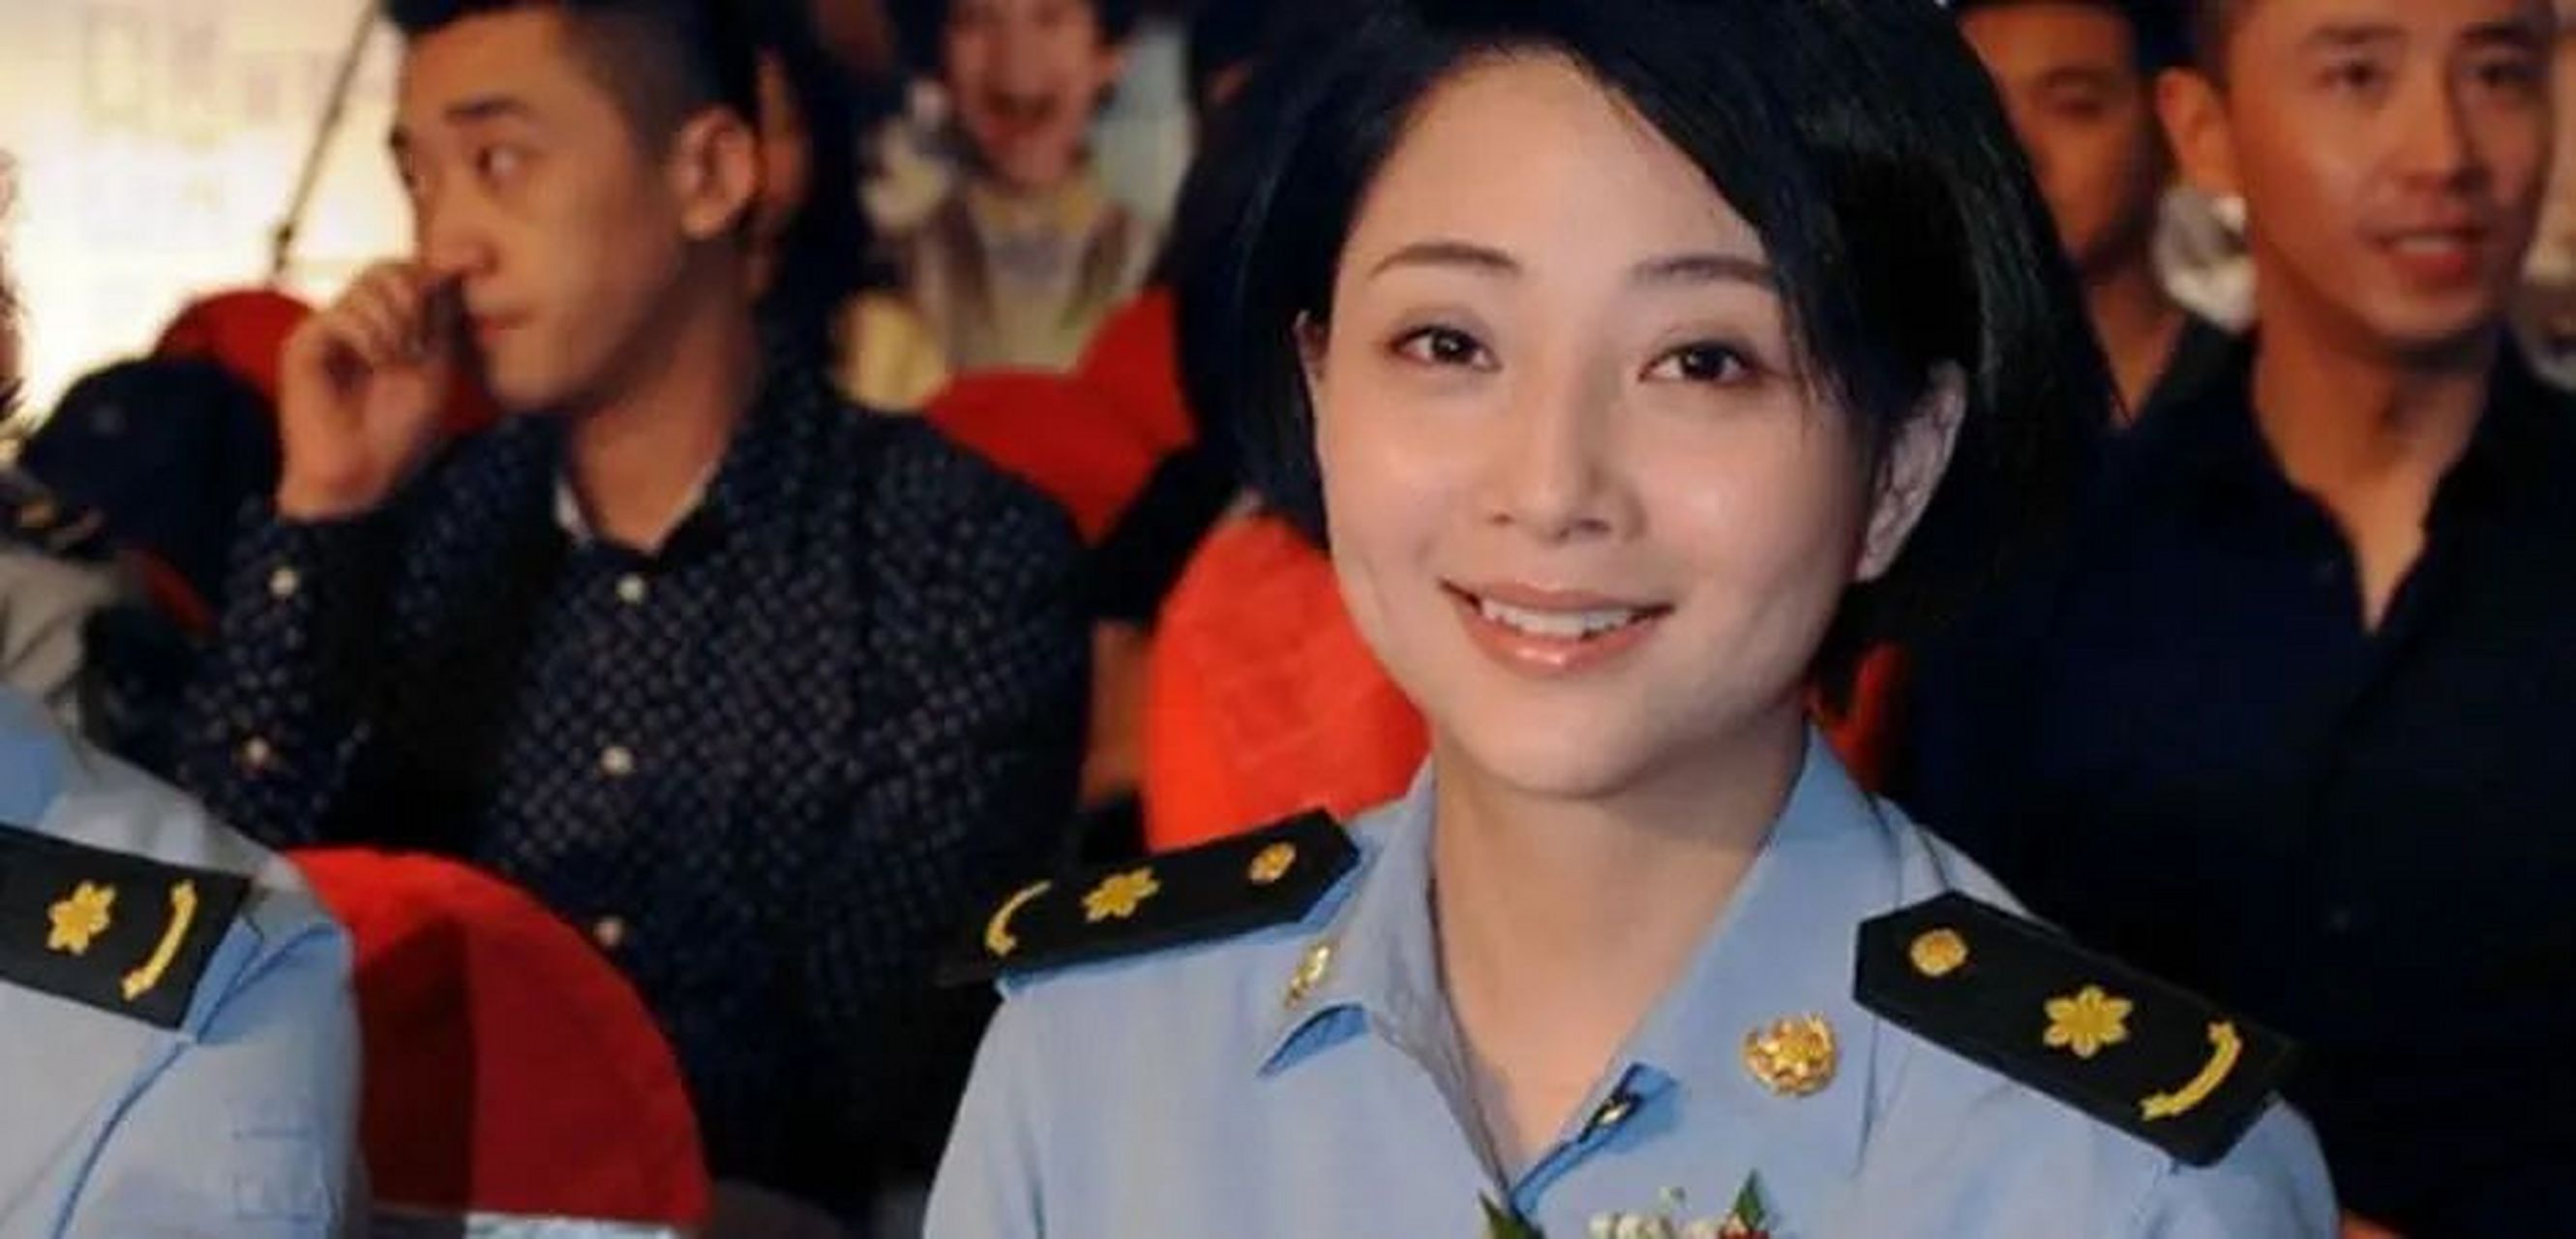 殷桃,毕业于中国解放军艺术学院戏剧系的殷桃,大概是穿军装最有蔚道